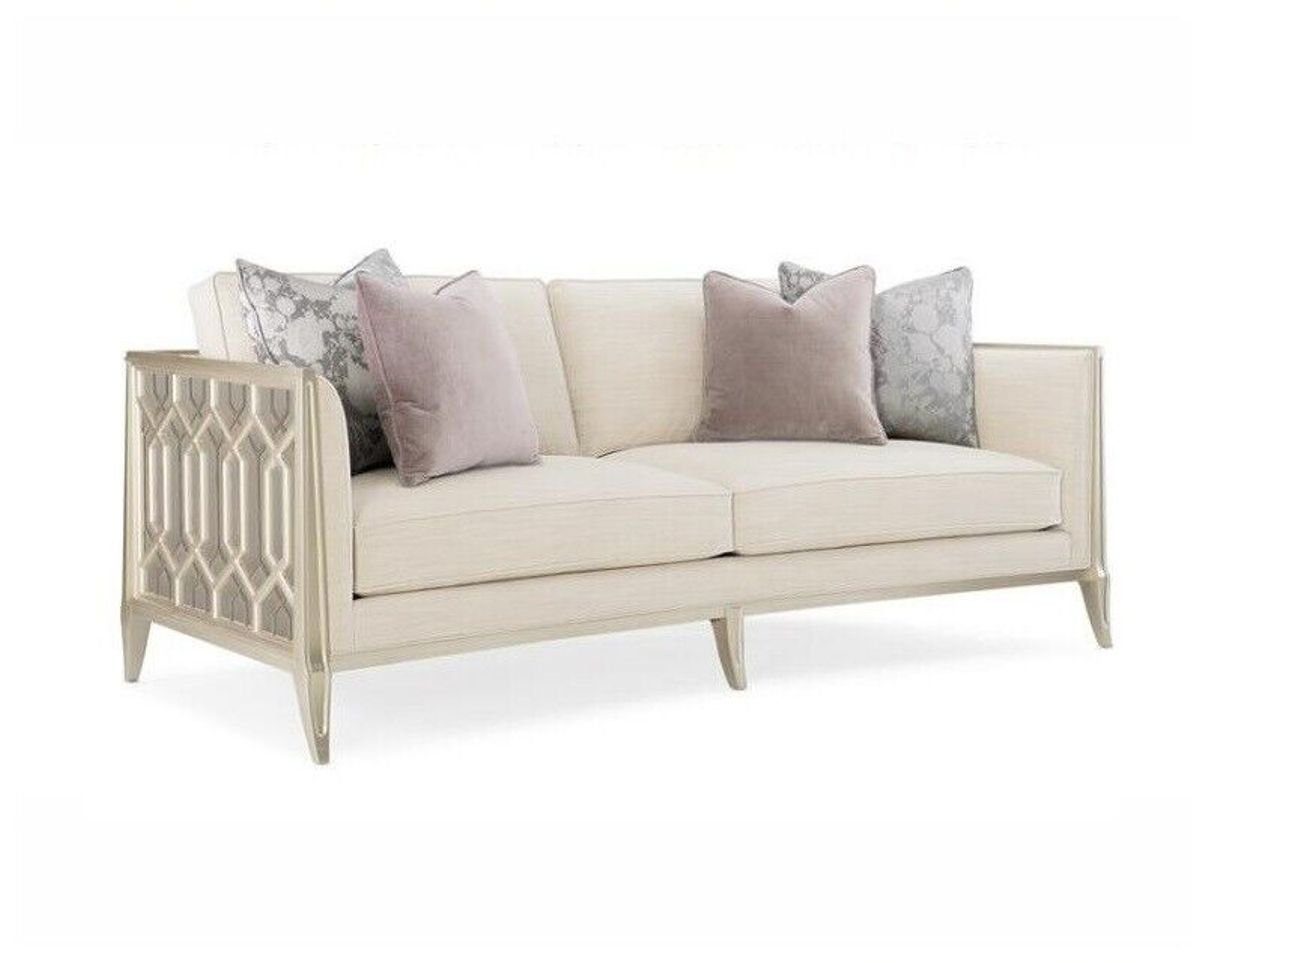 JVmoebel 3-Sitzer Moderner 3-Sitzer Design Polster Sofa Couch Möbel Textil Neu, Made in Europe